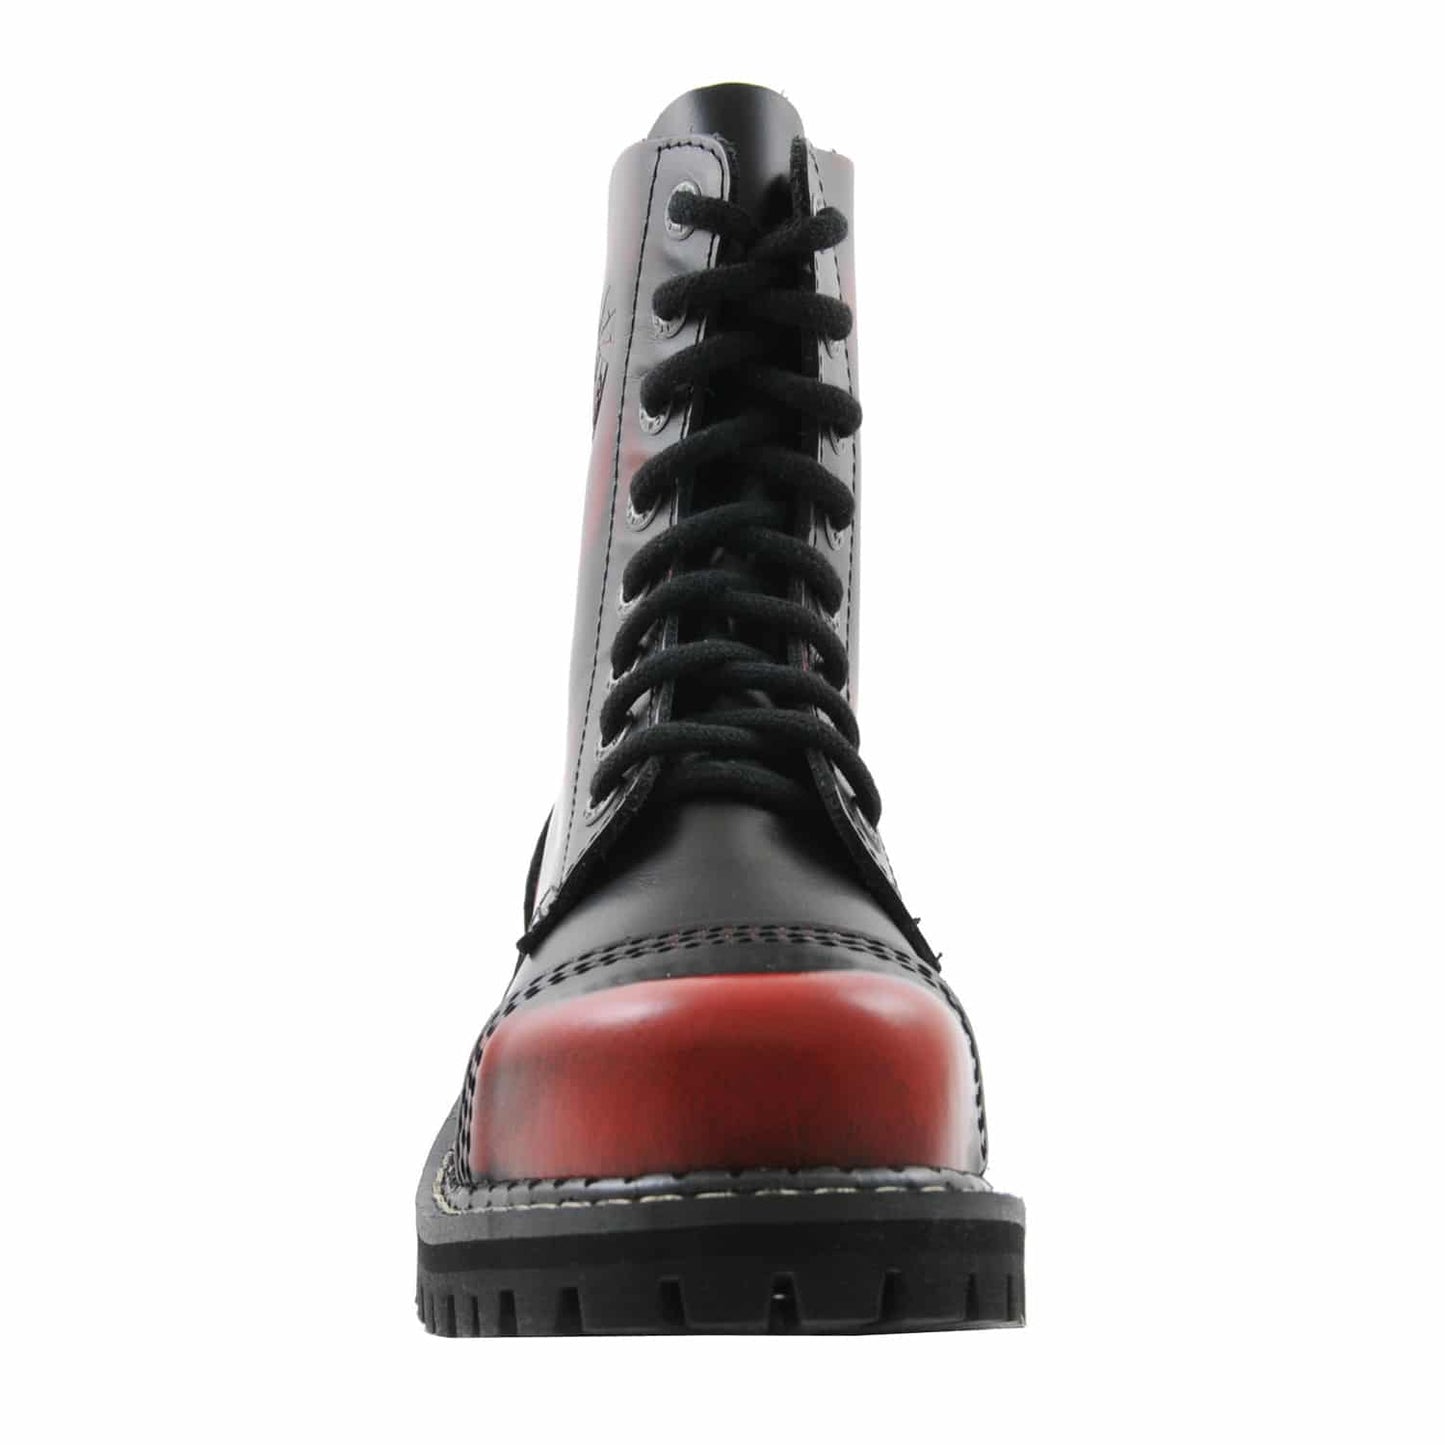 Voderansicht: Schwarz-rote 8 Loch-Stiefel aus Leder